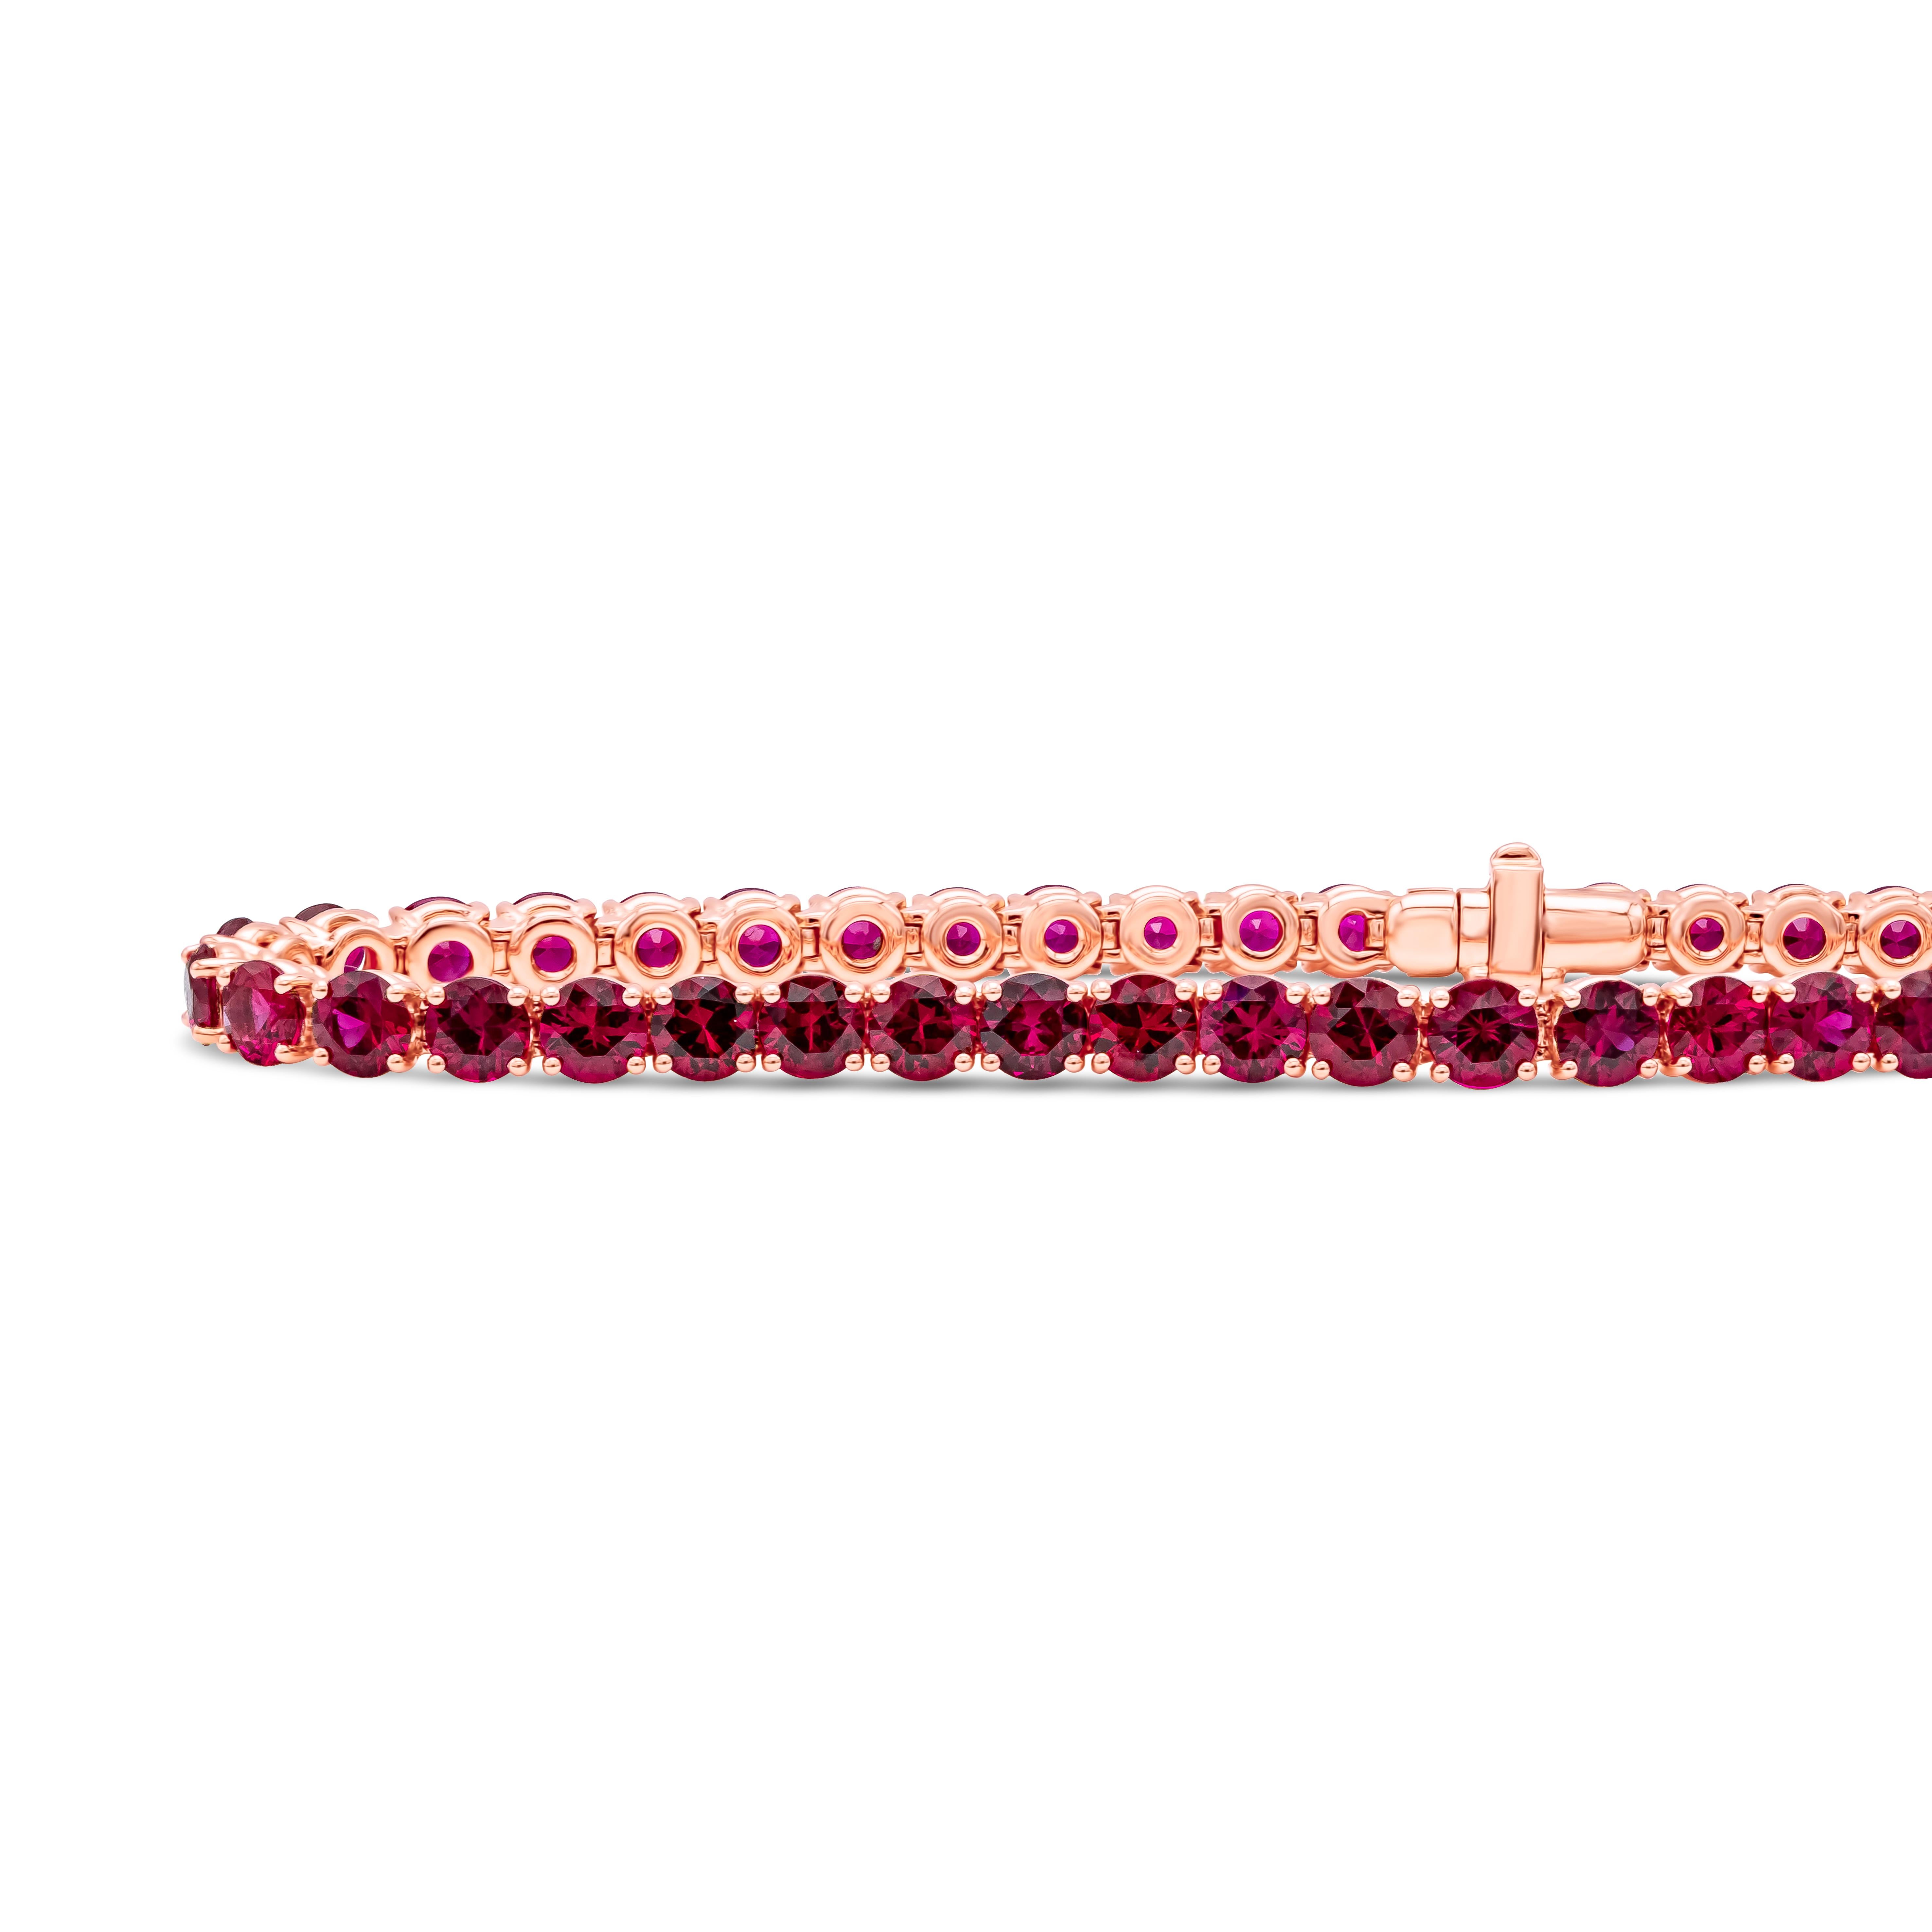 Ein schlichtes, aber schickes Tennisarmband mit einer Reihe runder, brillanter burmesischer Rubine. Montiert in 18K Rose Gold. Das Gewicht der Rubine beträgt insgesamt 9,39 Karat. Perfekt aufeinander abgestimmt.

Roman Malakov ist ein Unternehmen,